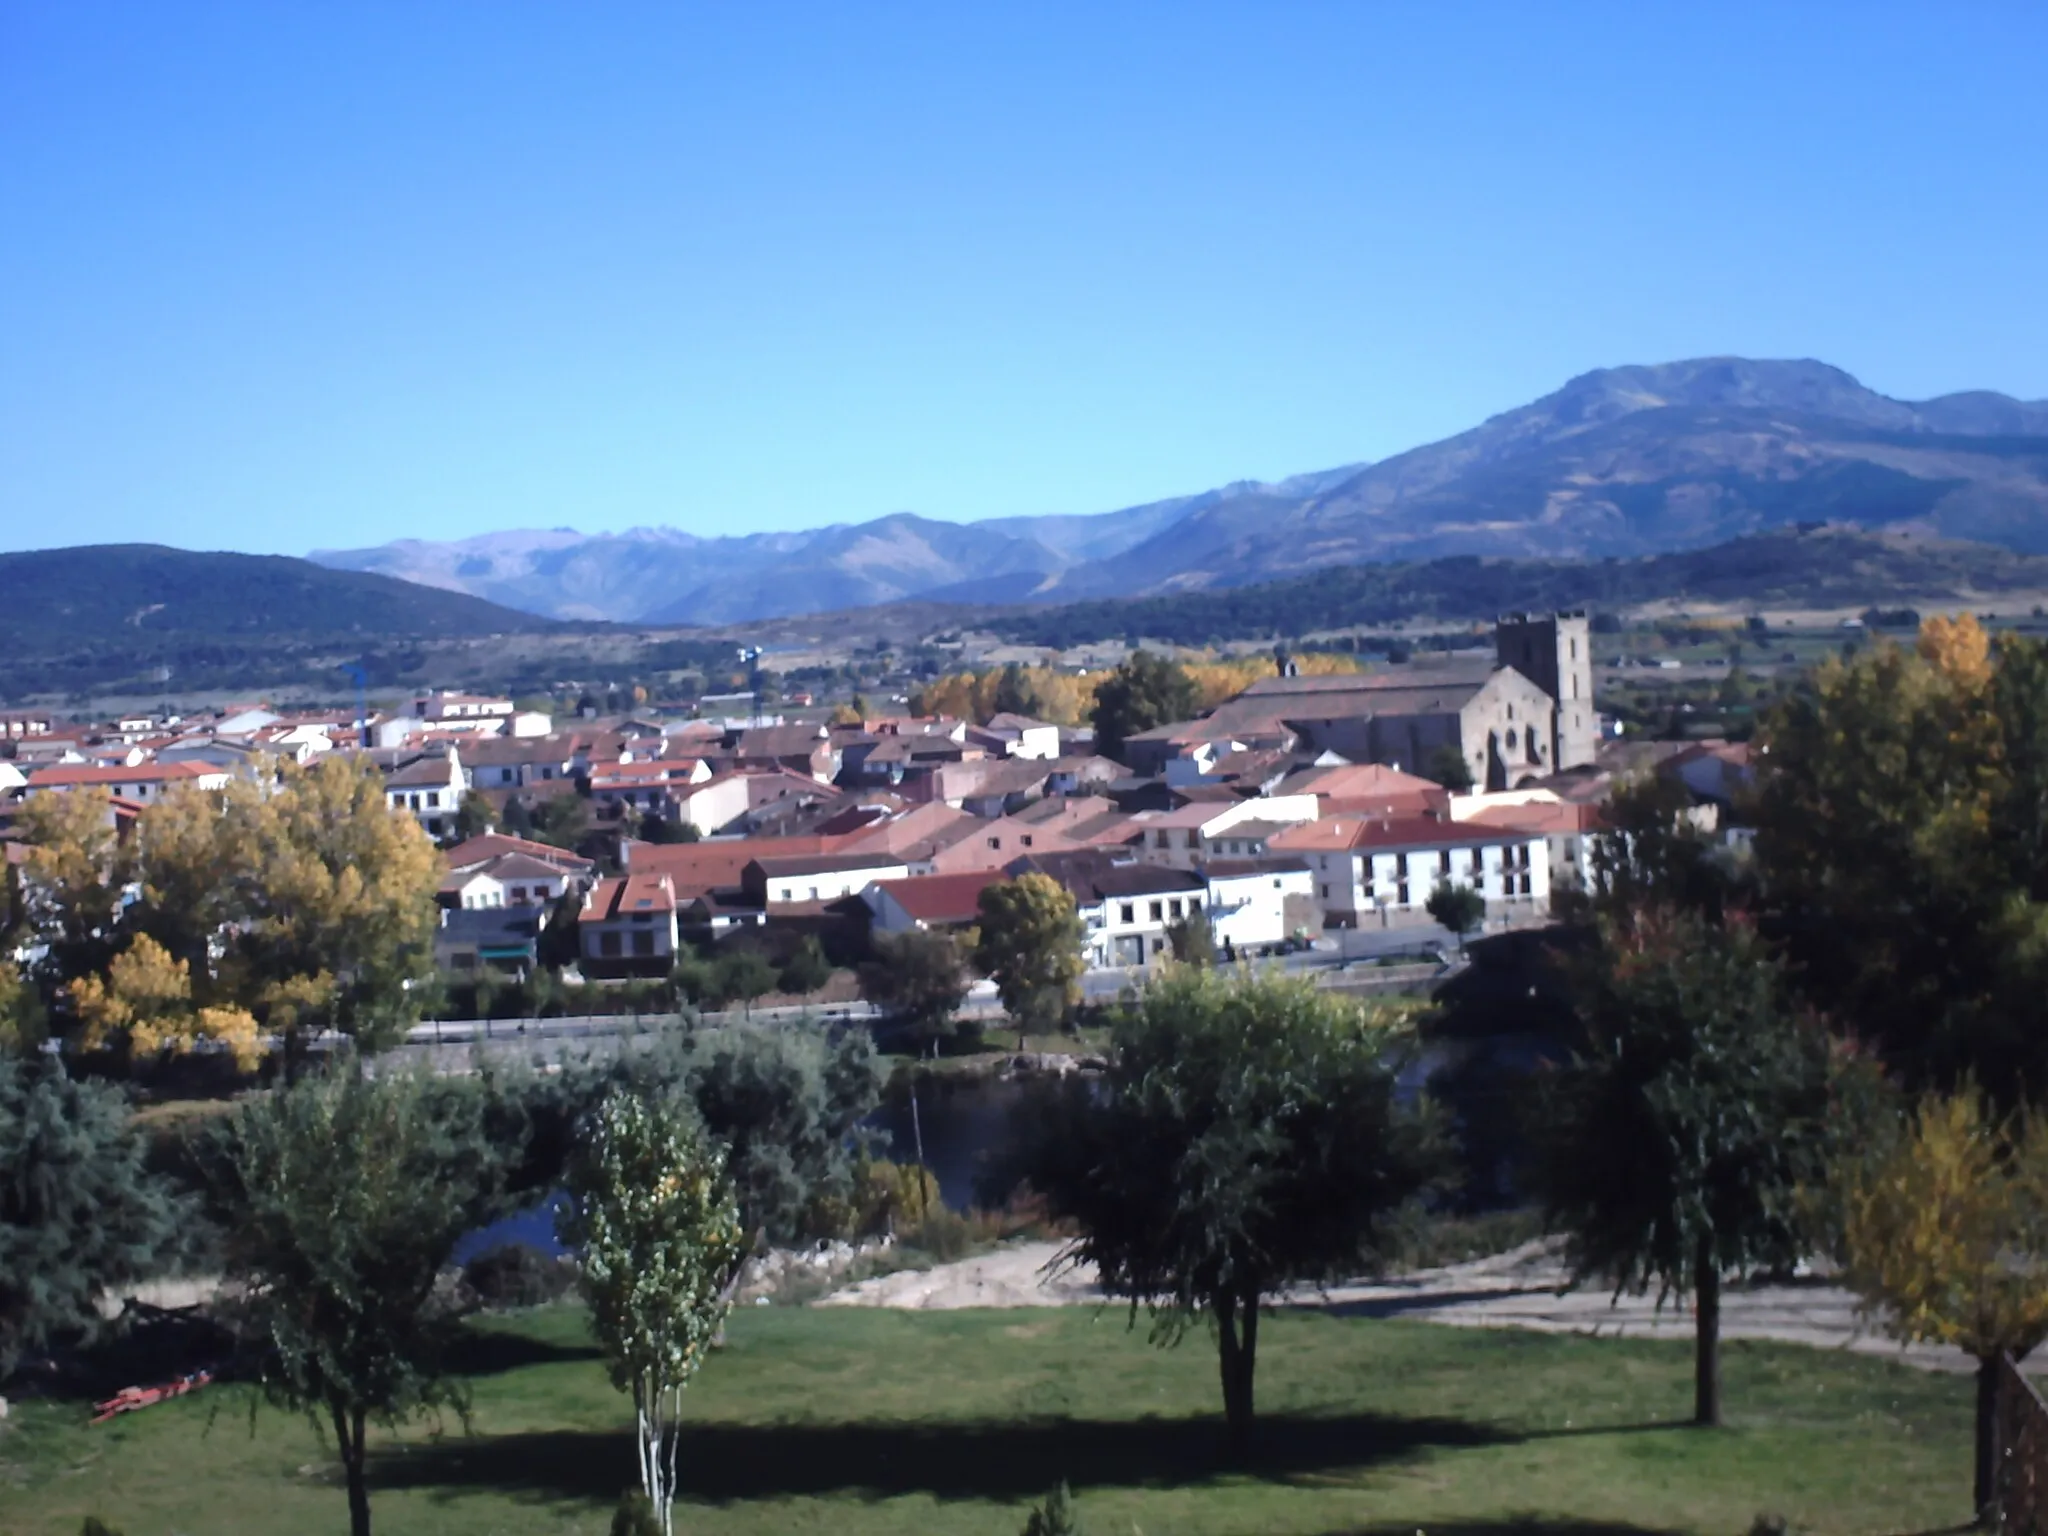 Billede af Castilla y León